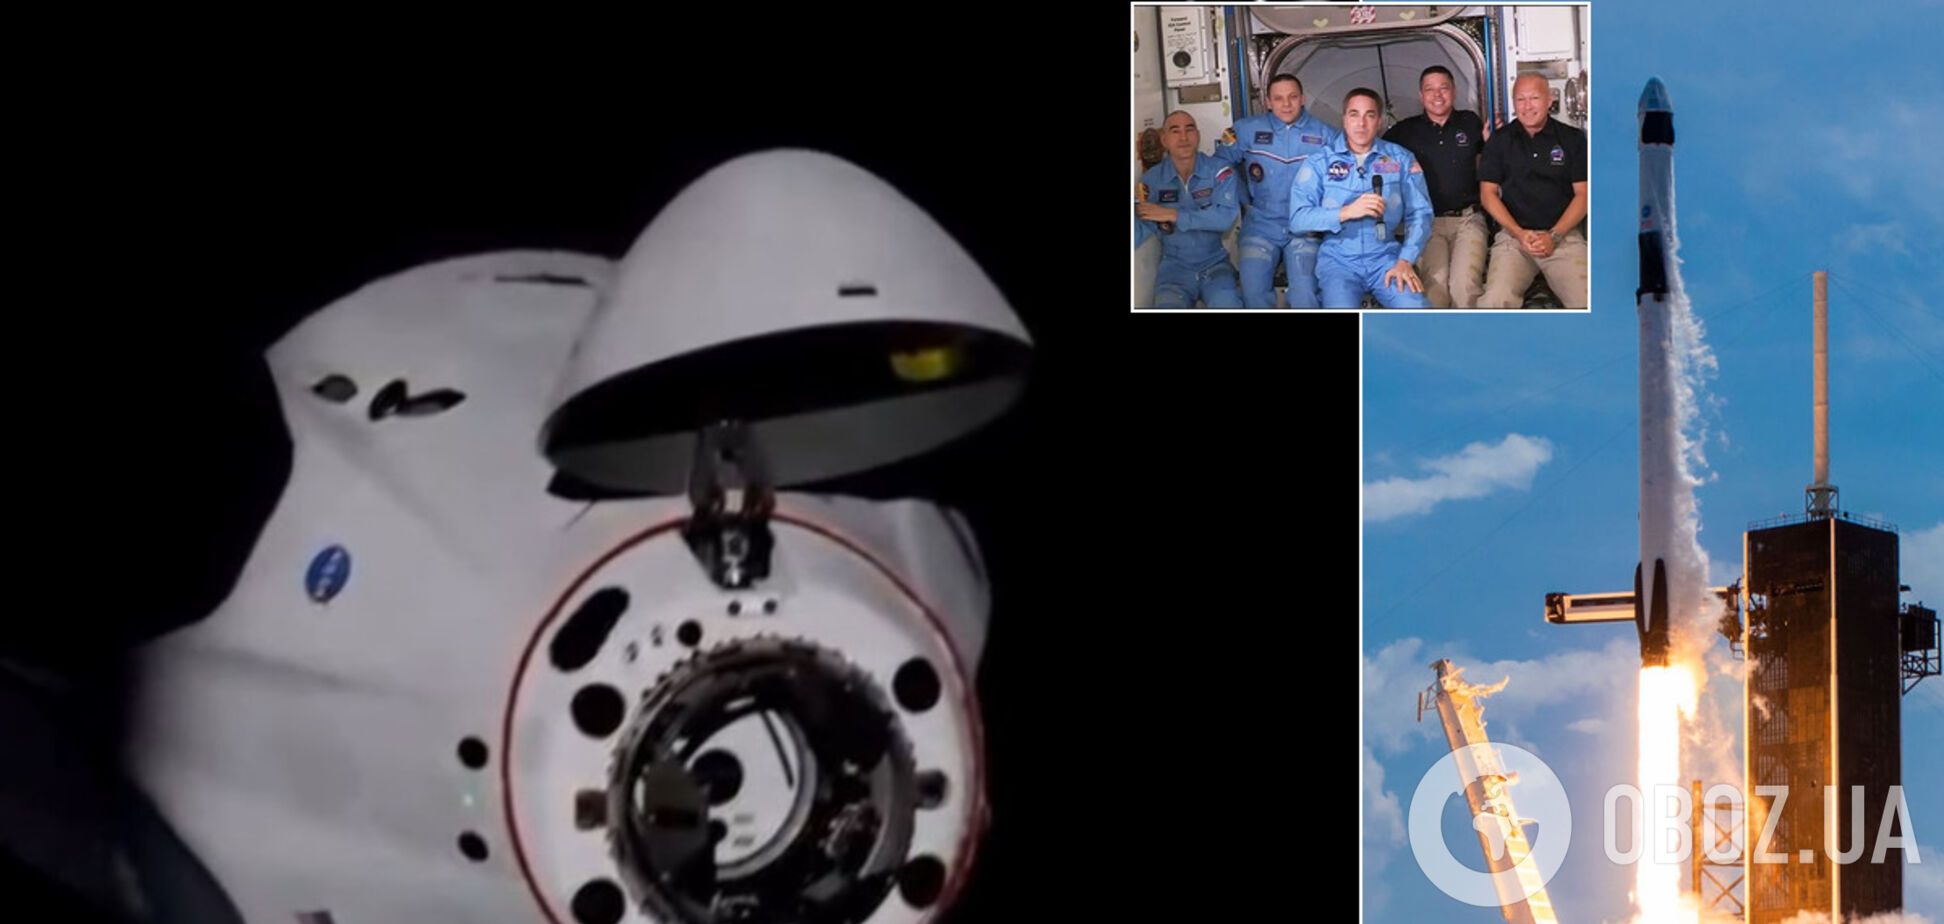 Crew Dragon Маска доставил астронавтов на МКС. Историческое видео